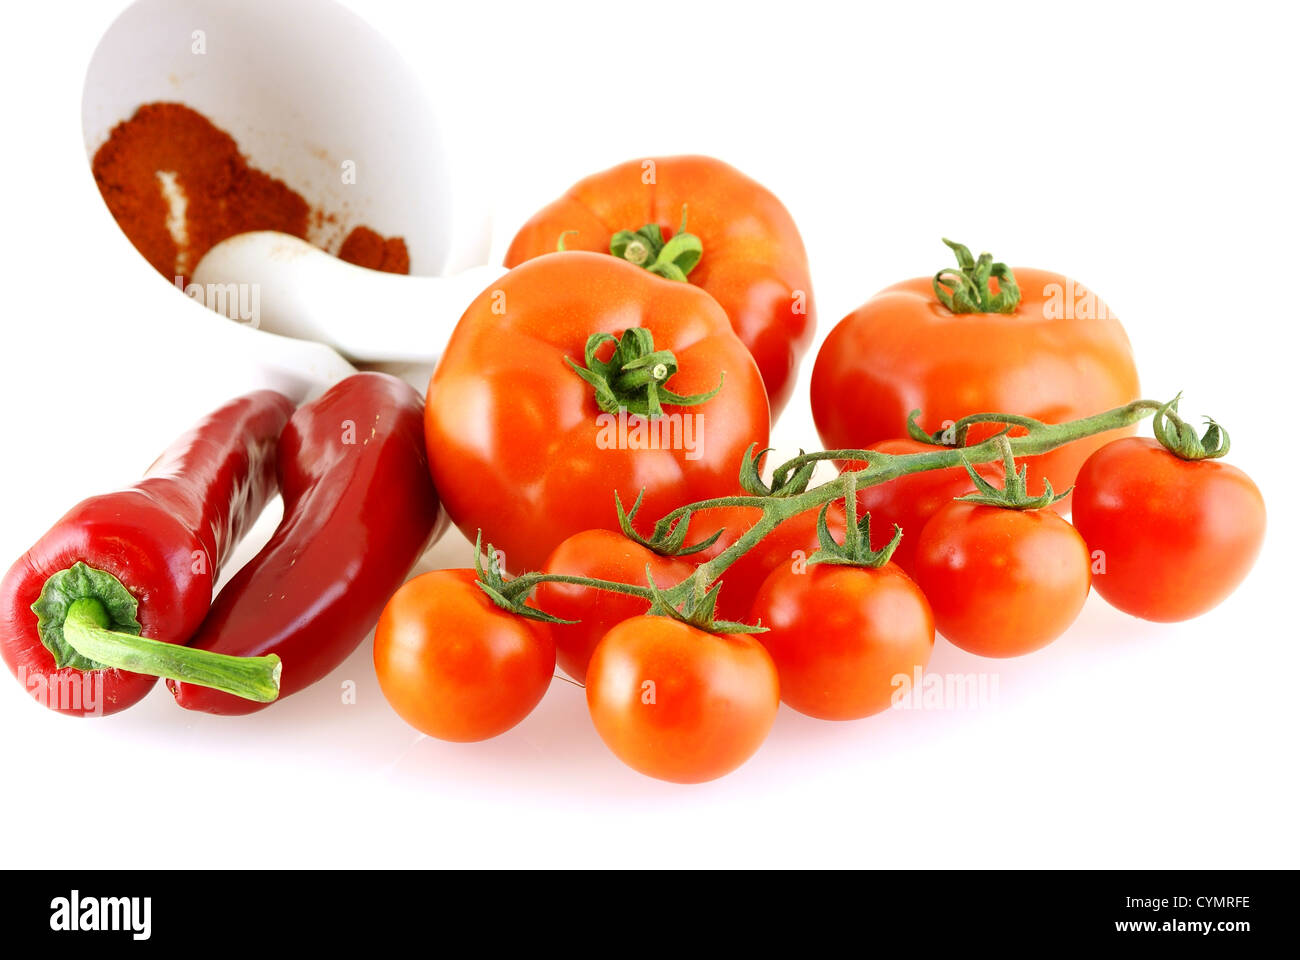 Un sacco di diversi i pomodori e la paprica rossa su sfondo bianco Foto Stock